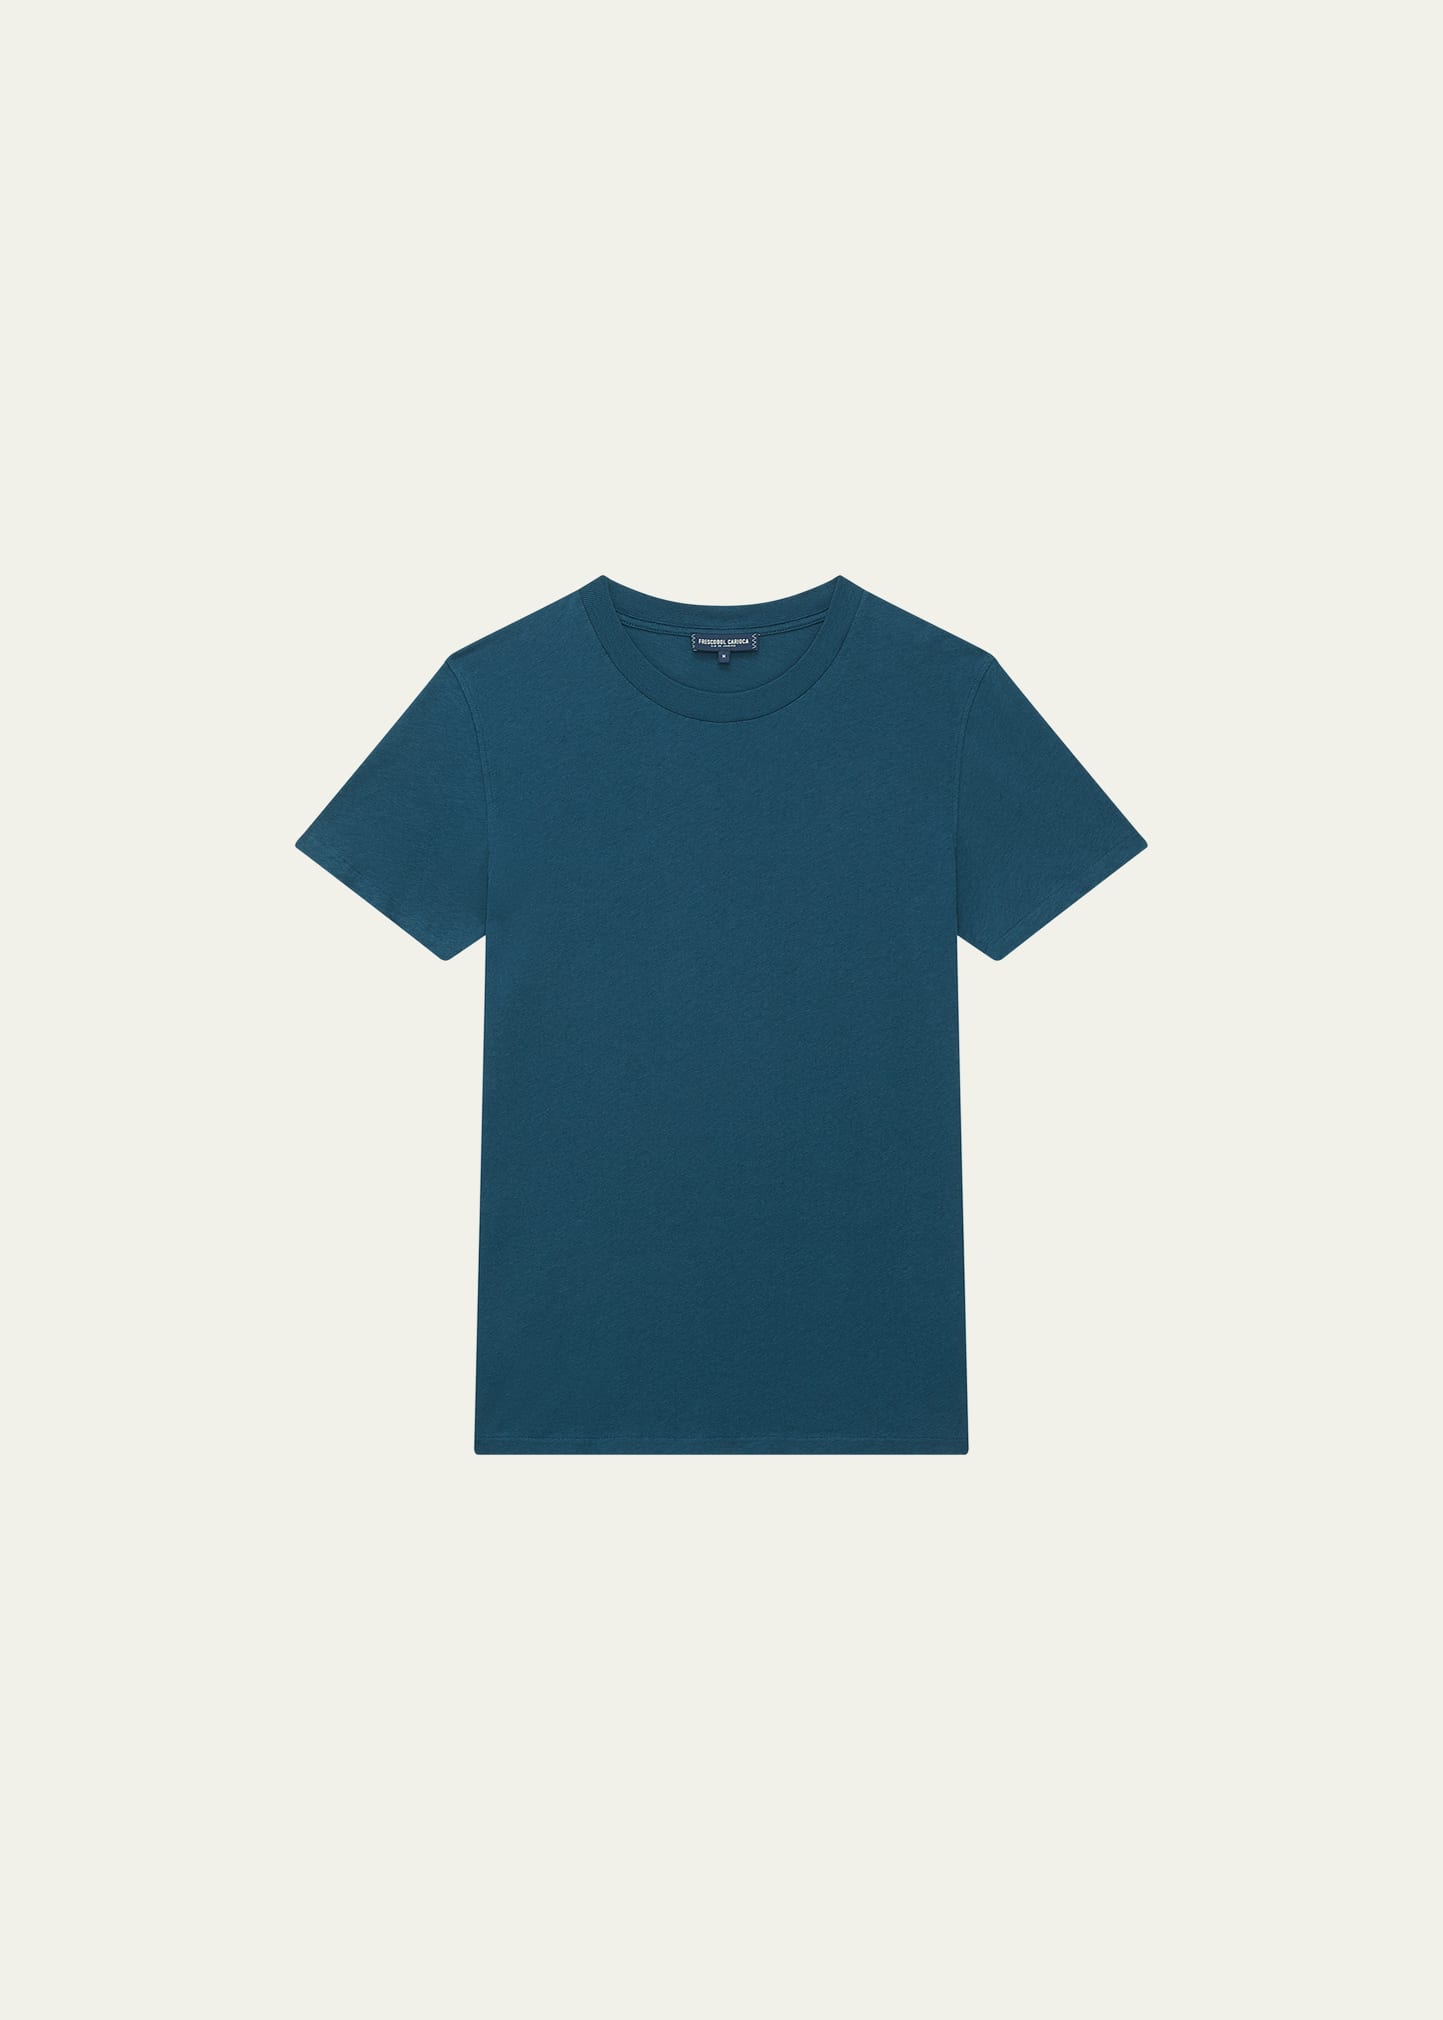 Men's Cotton Linen Short-Sleeve T-Shirt